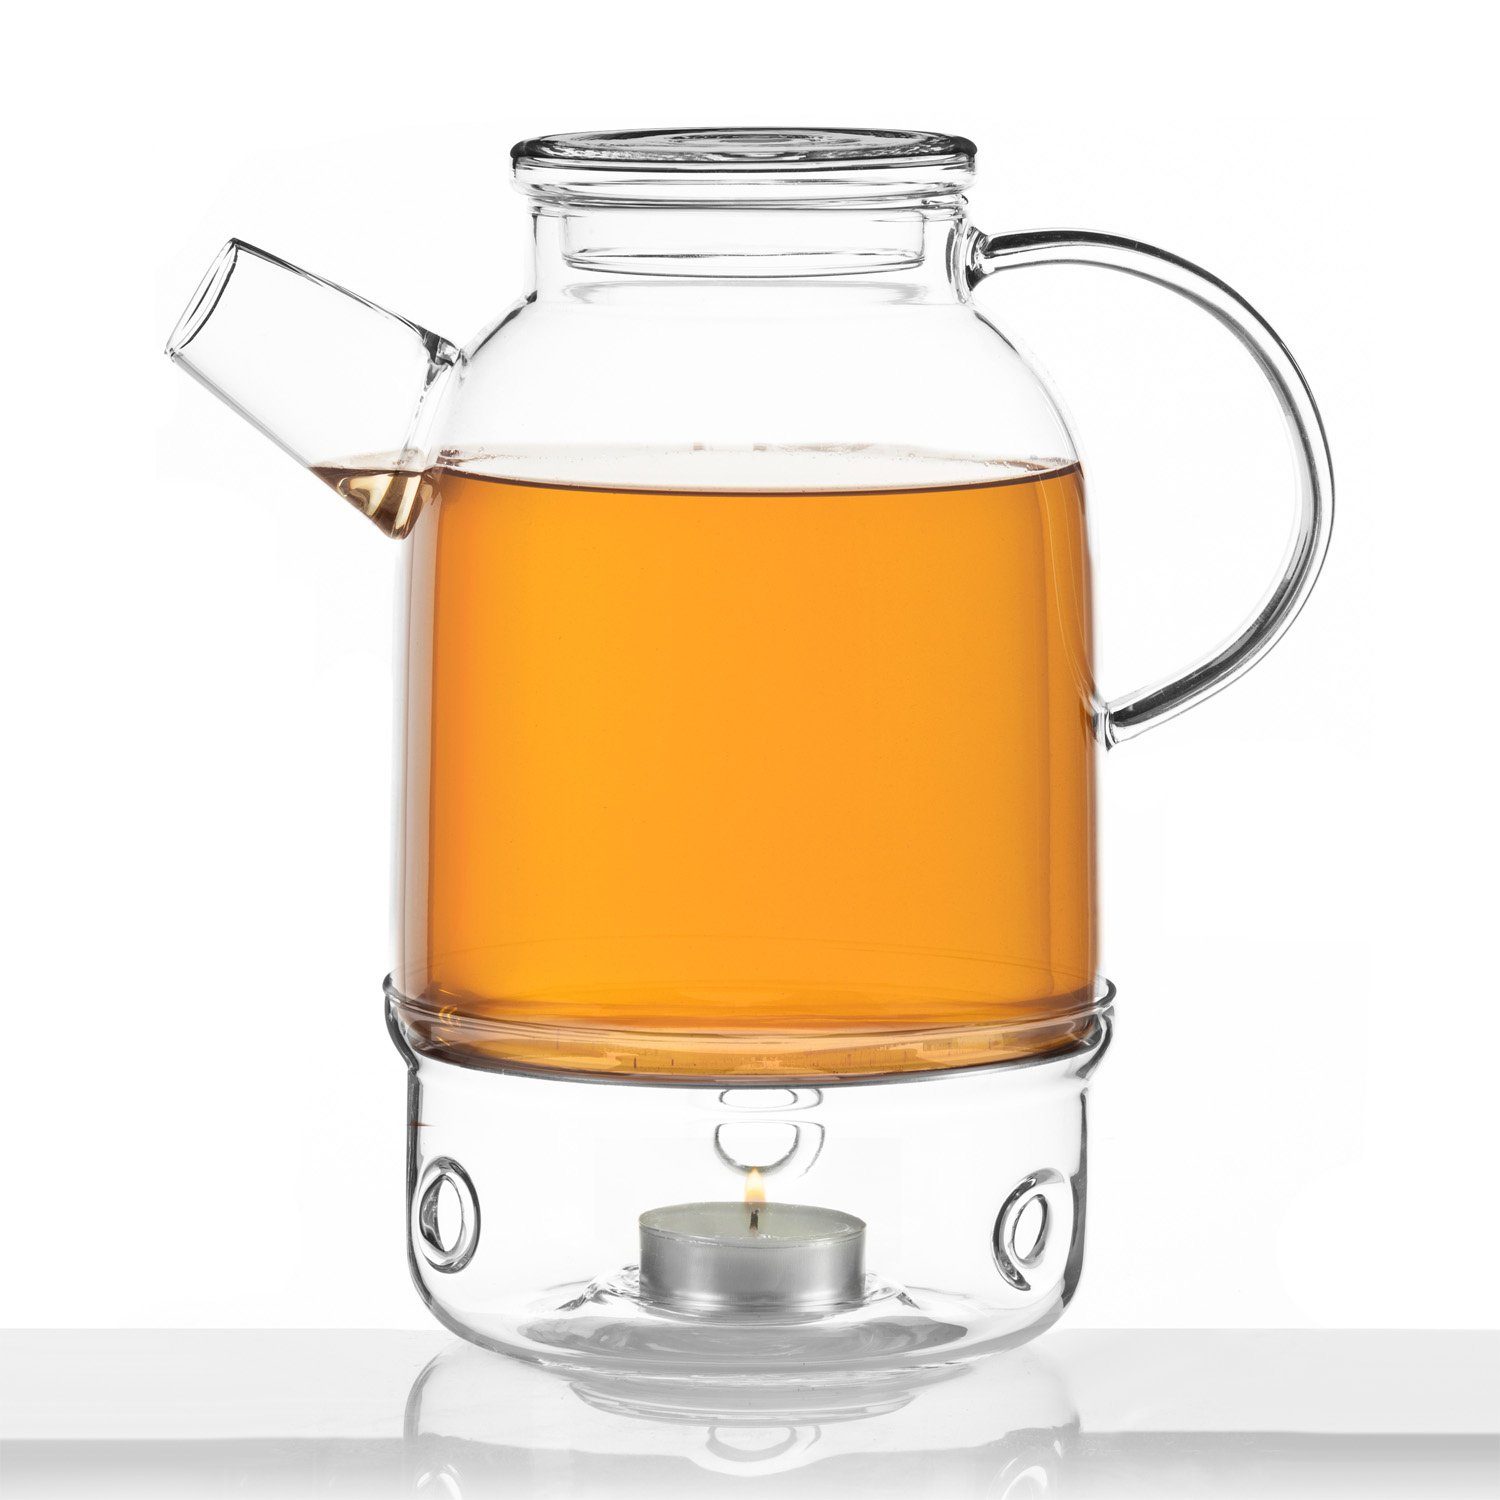 aus Borosilikat-Glas, Teekannen-Wärmer Stövchen Teekanne Teewärmer Dimono